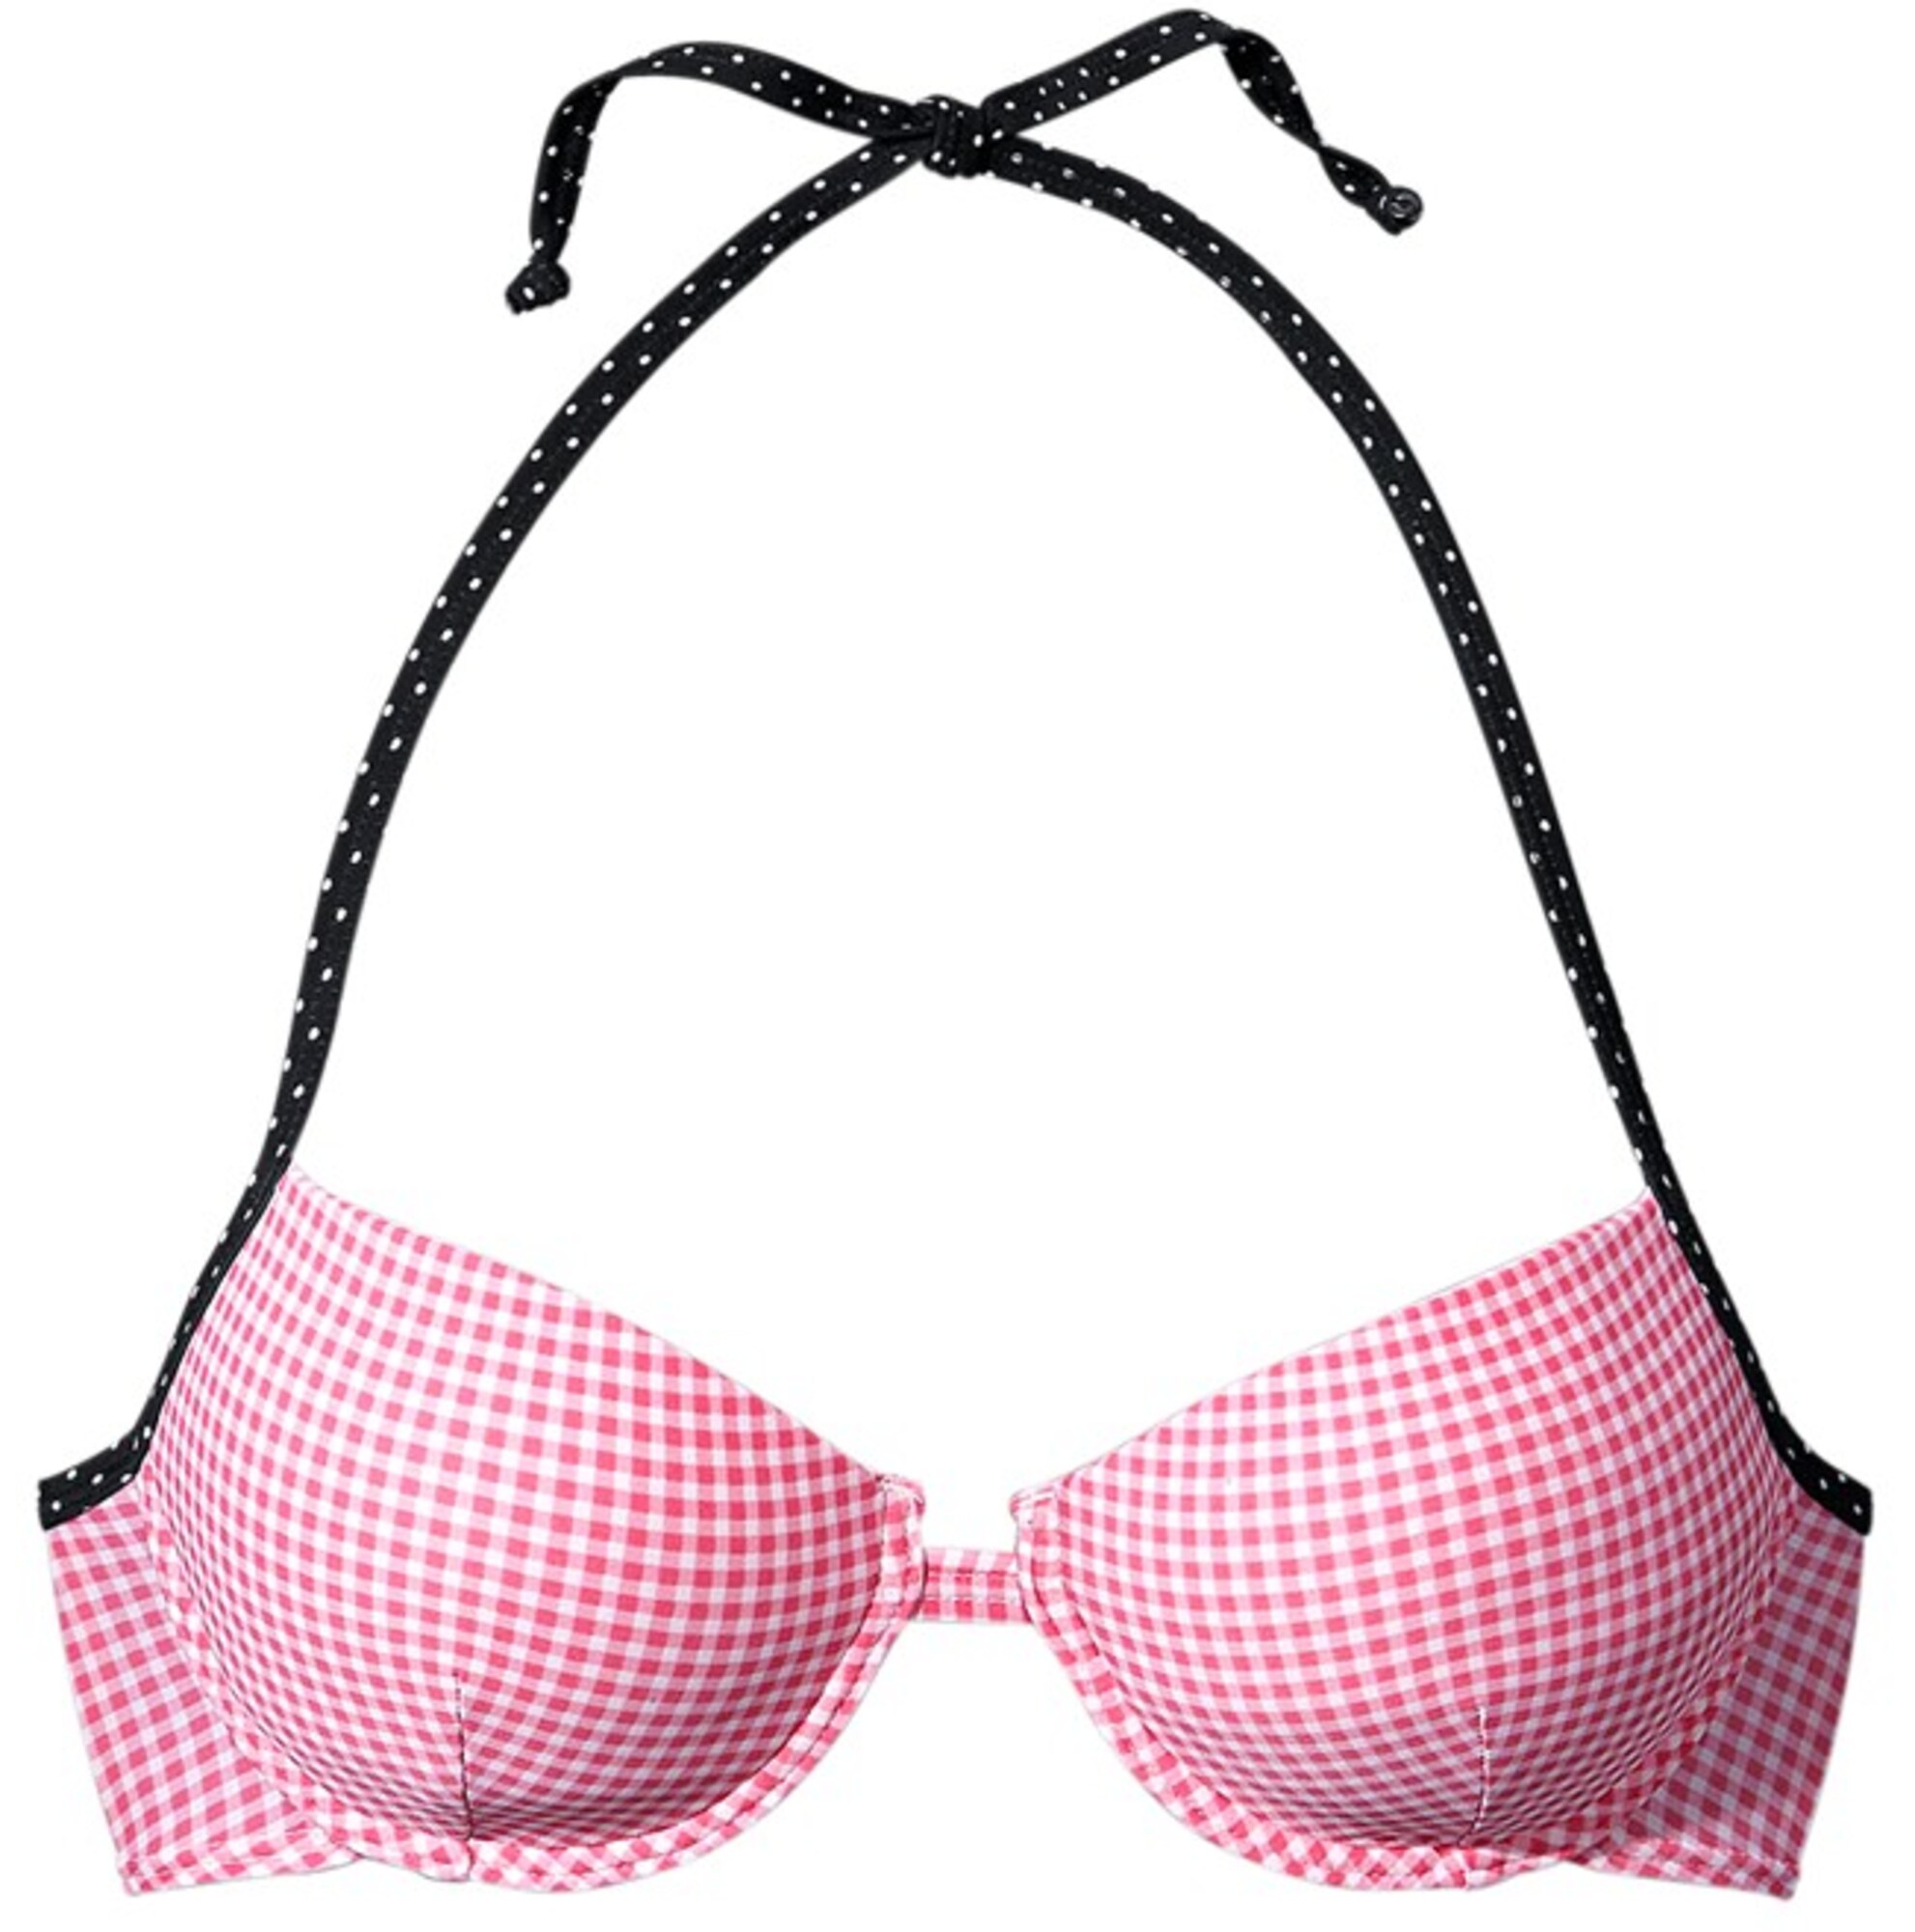 BUFFALO Bikinio viršutinė dalis  šviesiai rožinė / juoda / balta